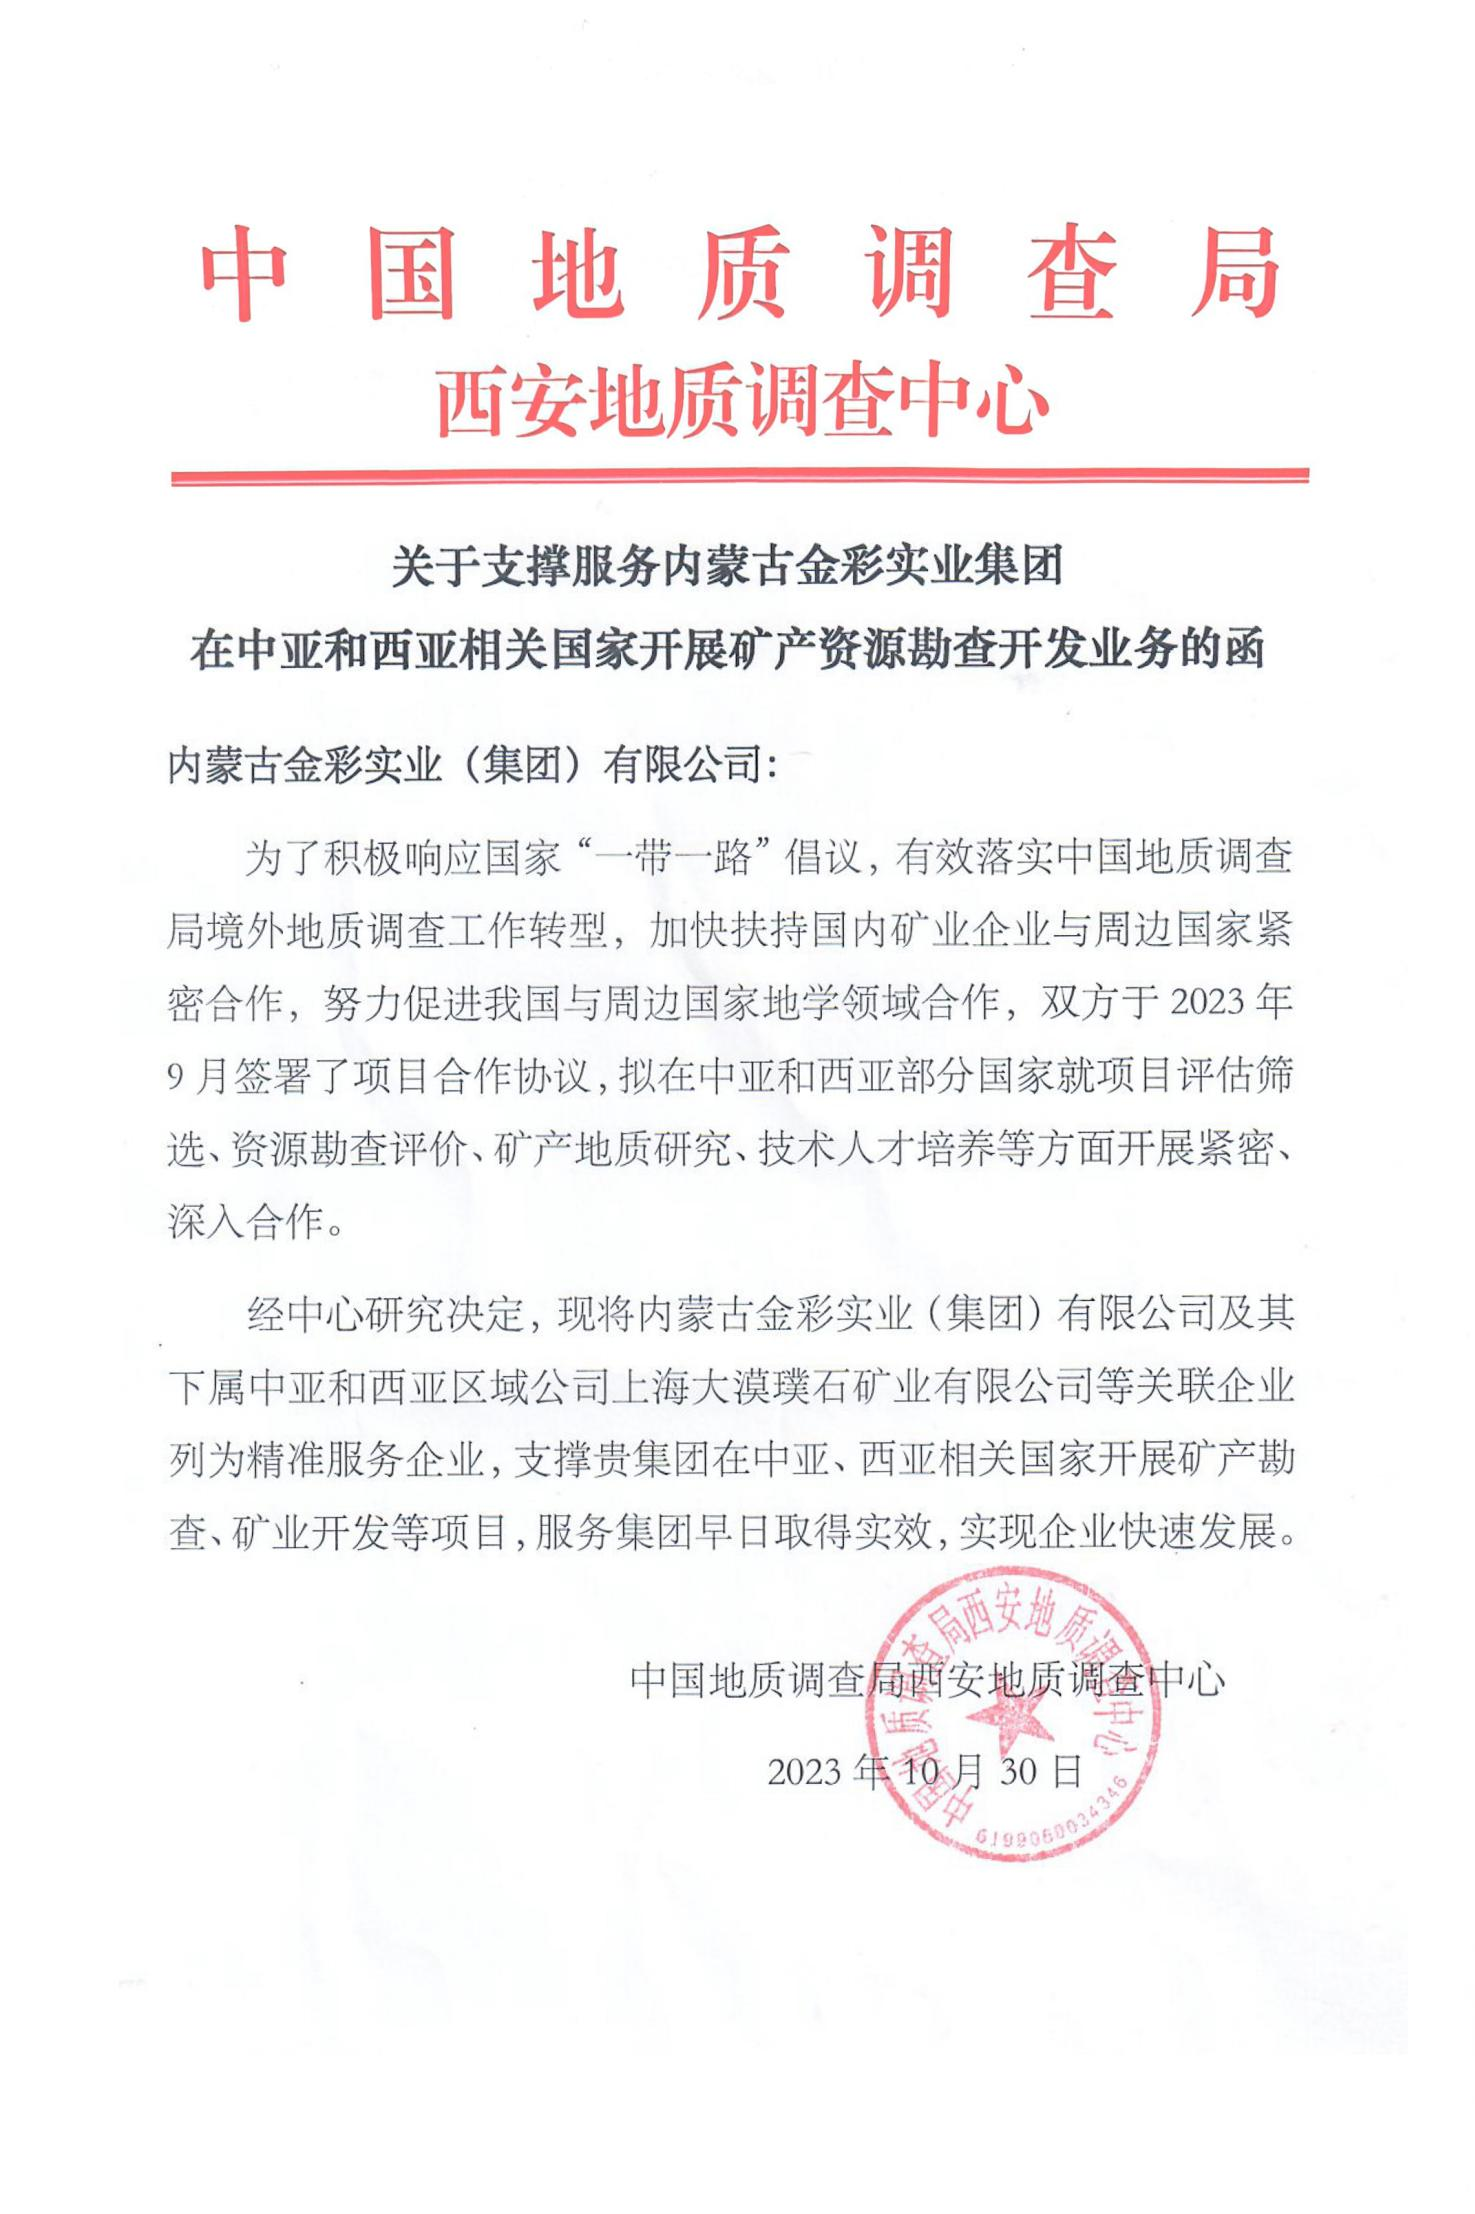  集团再次成为中国地调局的精准服务企业